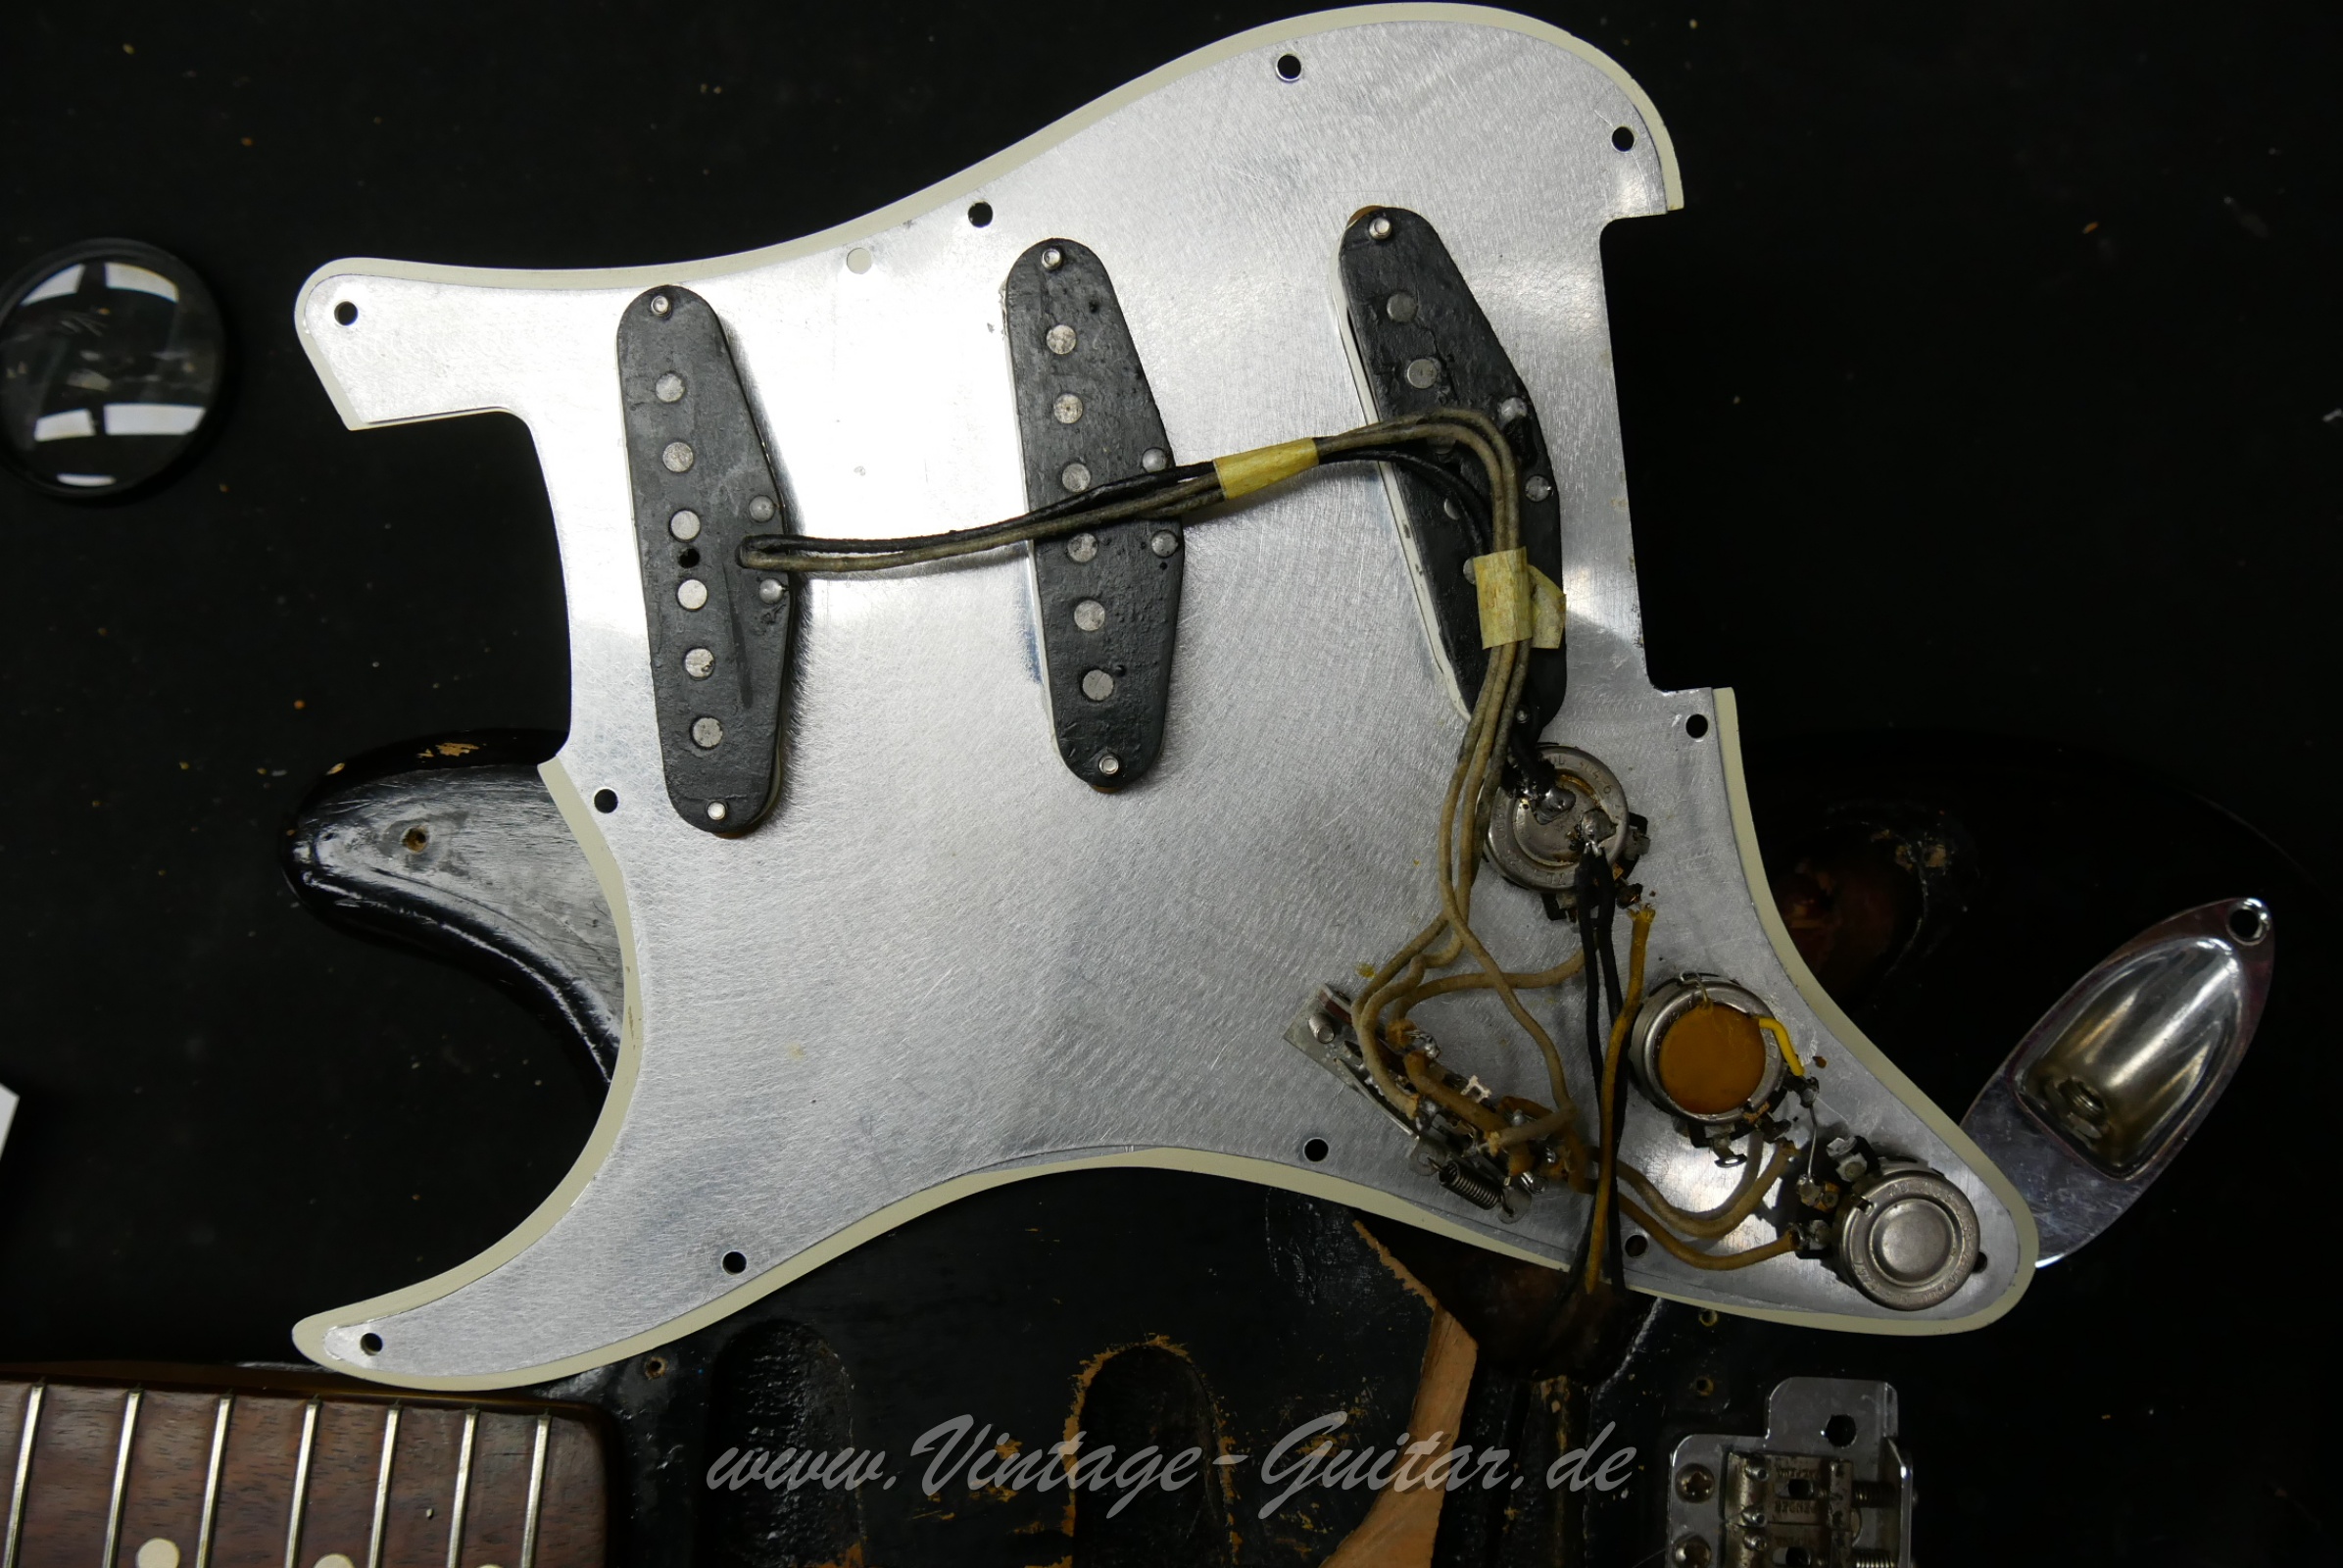 Fender-Stratocaster-1964-body-with-1969-neck-black-019.jpg